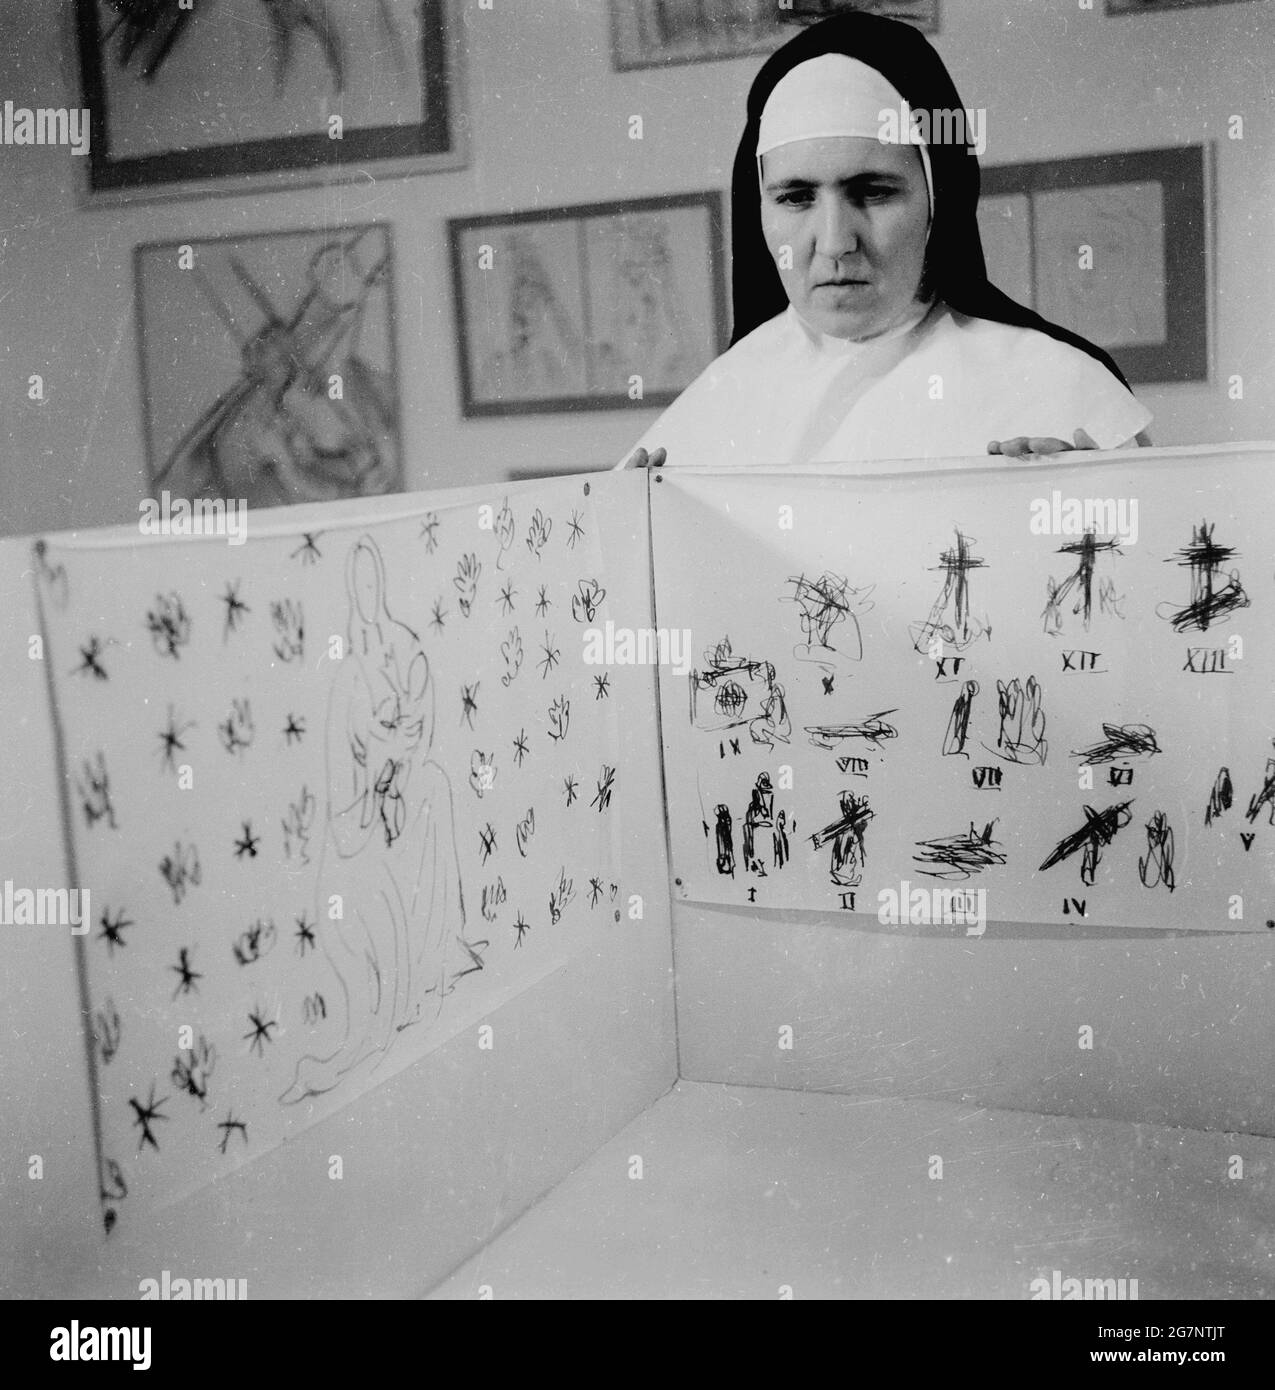 1951, disegni dell'artista francese Henri Matisse, in una mostra. Una suora dominicana che mostra gli schizzi di Matisse per l'interno della Cappella di Vence in Francia, una piccola cappella cattolica costruita sulla Costa Azzurra. Conosciuta anche come la Cappella del Rosario o la Cappella di Vence, fu costruita e decorata tra il 1947 e il 1951 sulla base di progetti e disegni di Matisse, che iniziò a lavorare al progetto quando aveva 77 anni. Gli era stato chiesto di aiutarlo con il disegno della cappella da una giovane infermiera che lo aveva curato quando era stato malato e che era entrato nel convento domenicano a Vence. Foto Stock